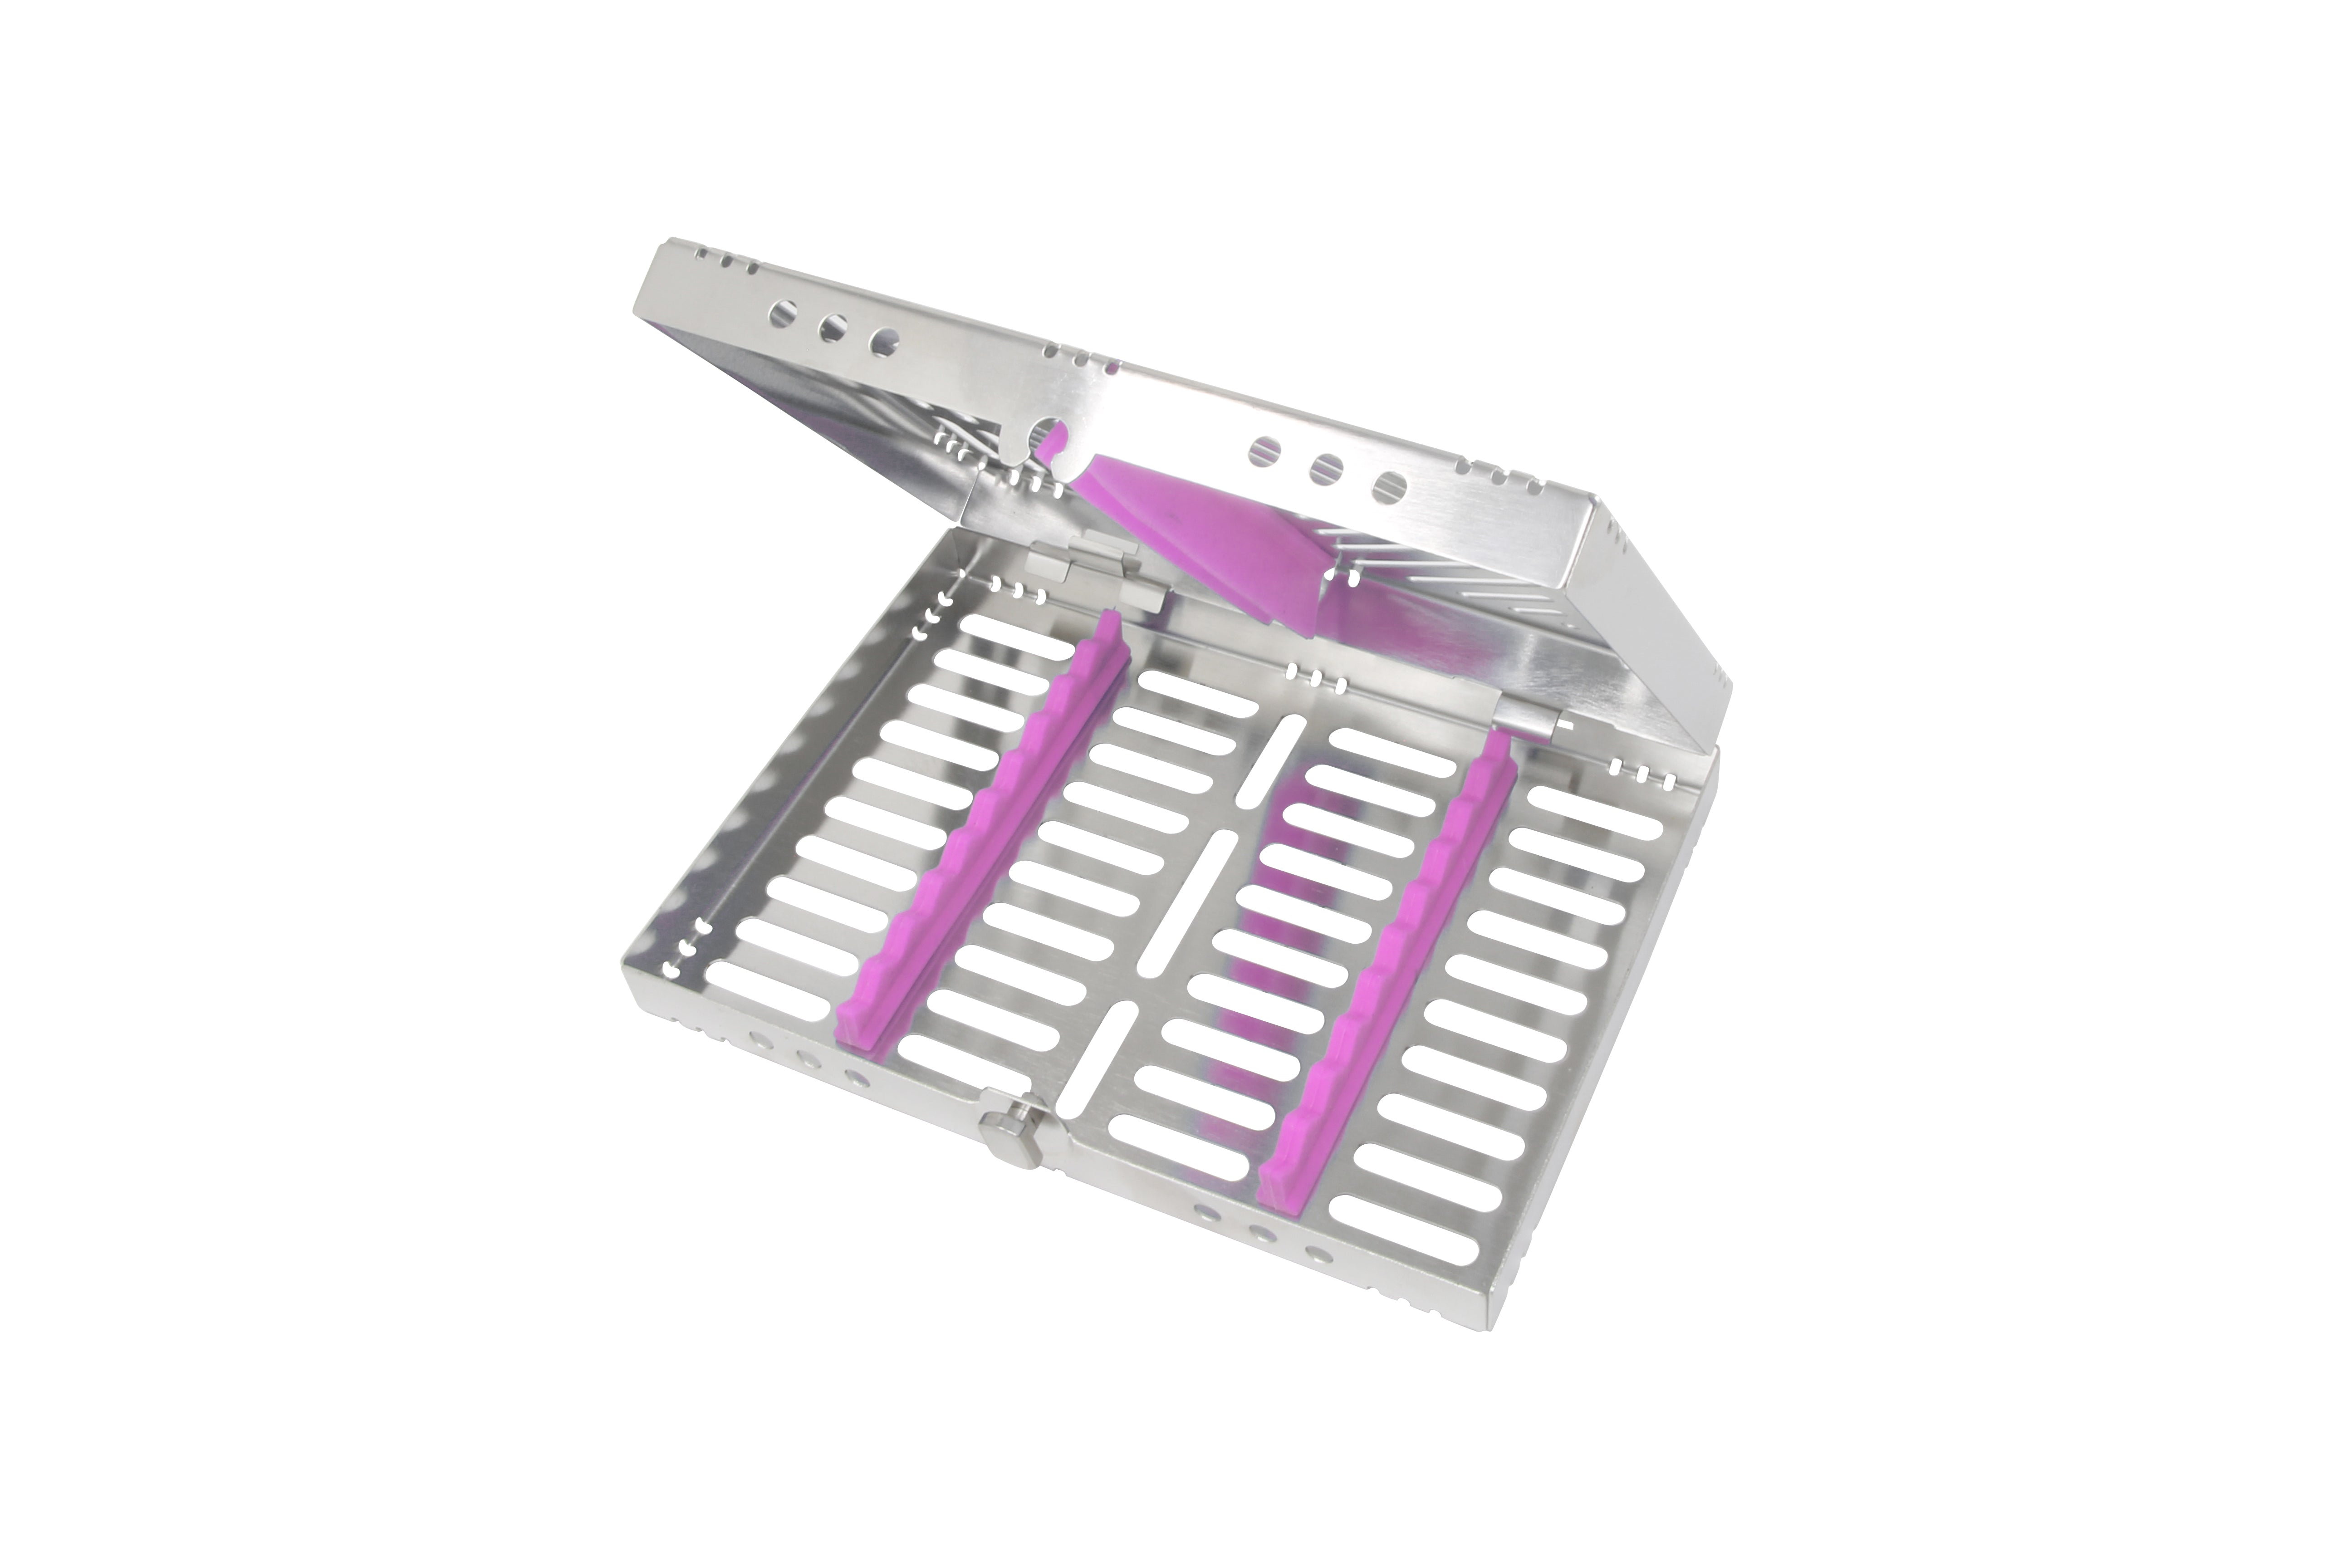 Sterilization Cassette for 10 Instruments - 200x145x32, Detachable - HiTeck Medical Instruments